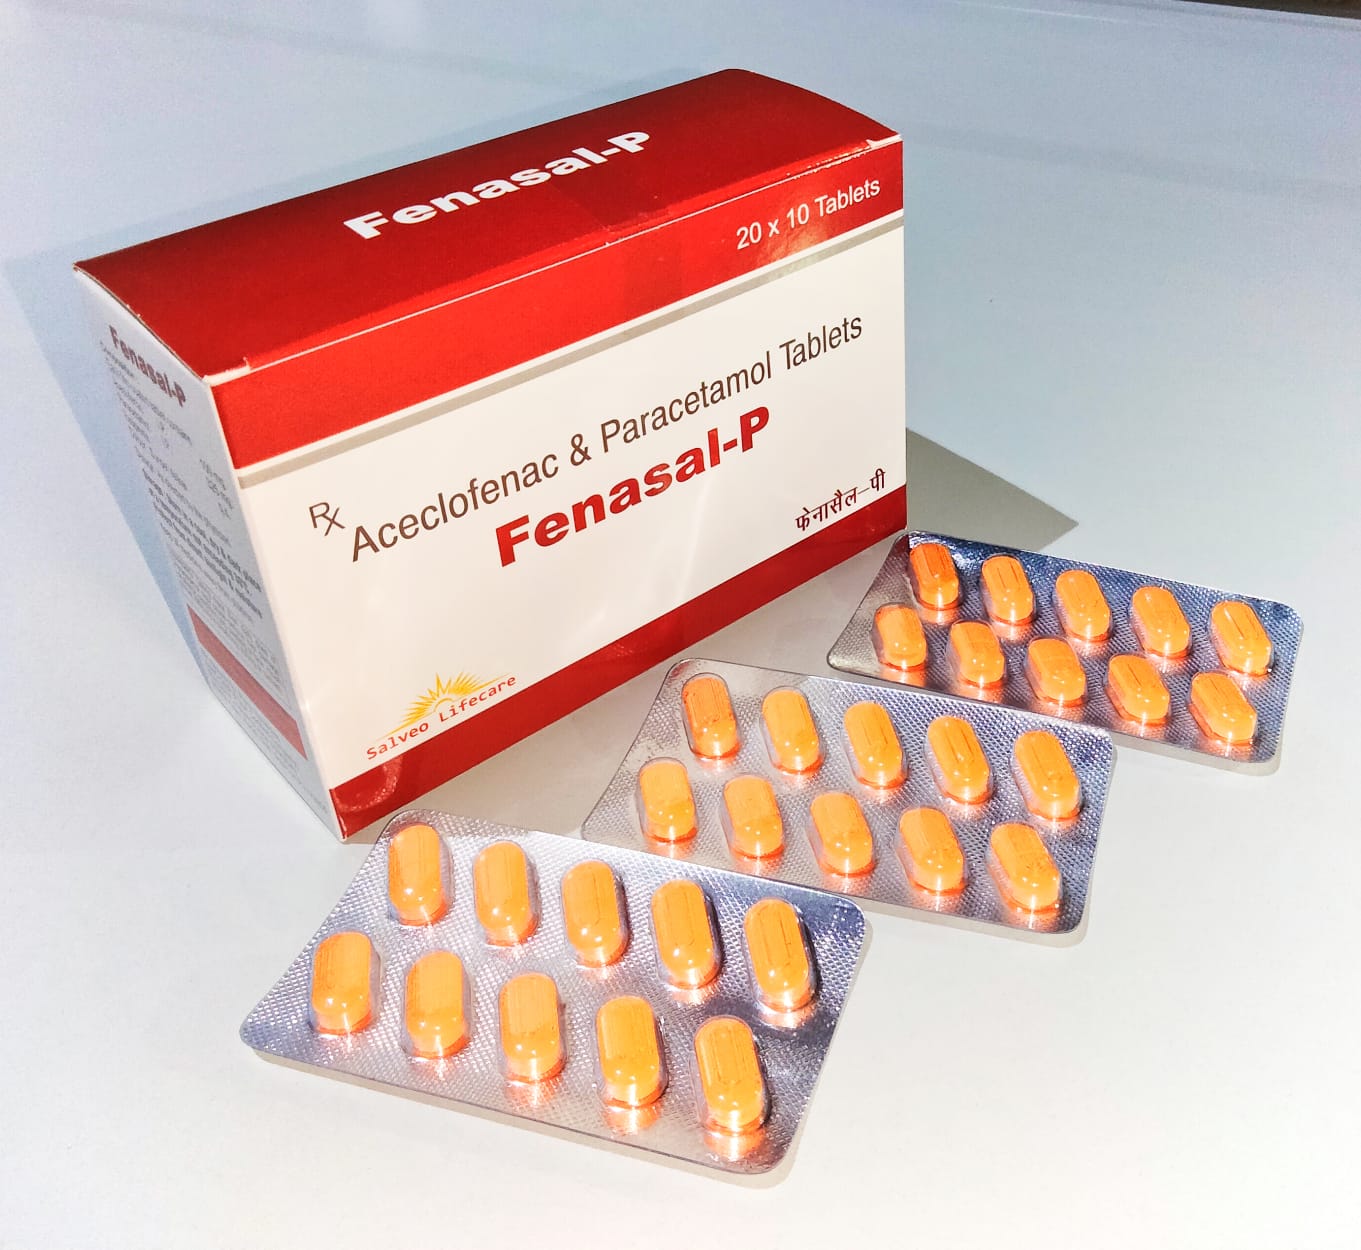 aceclofenac 100mg, paracetamol 325 mg